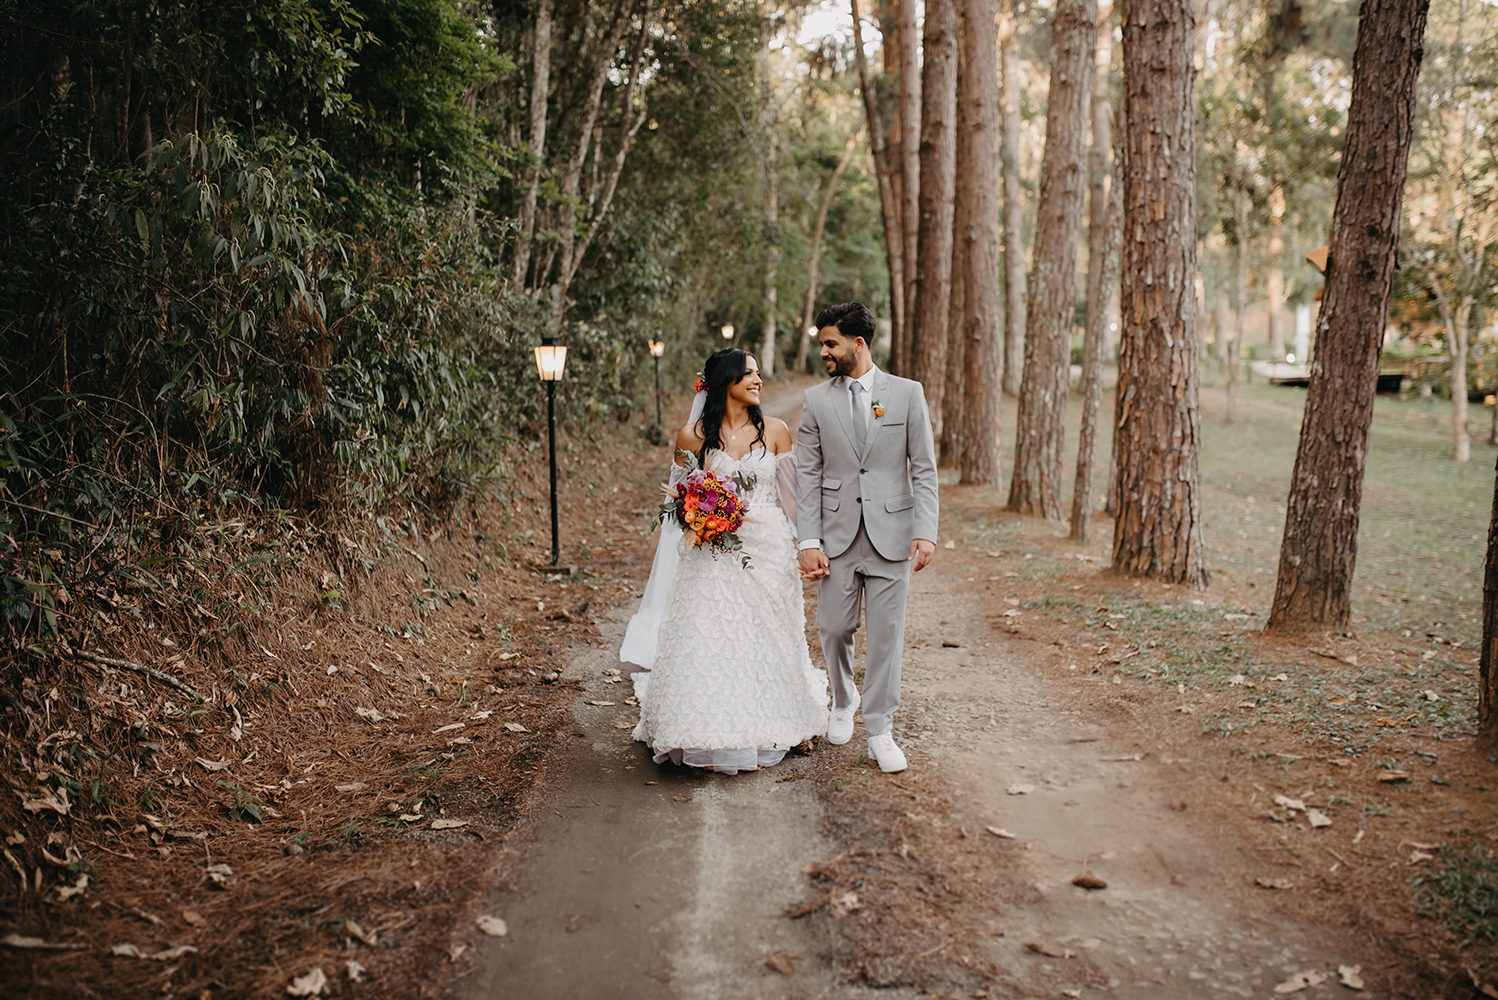 Ariane e Thiago | Casamento abençoado com decoração dos sonhos